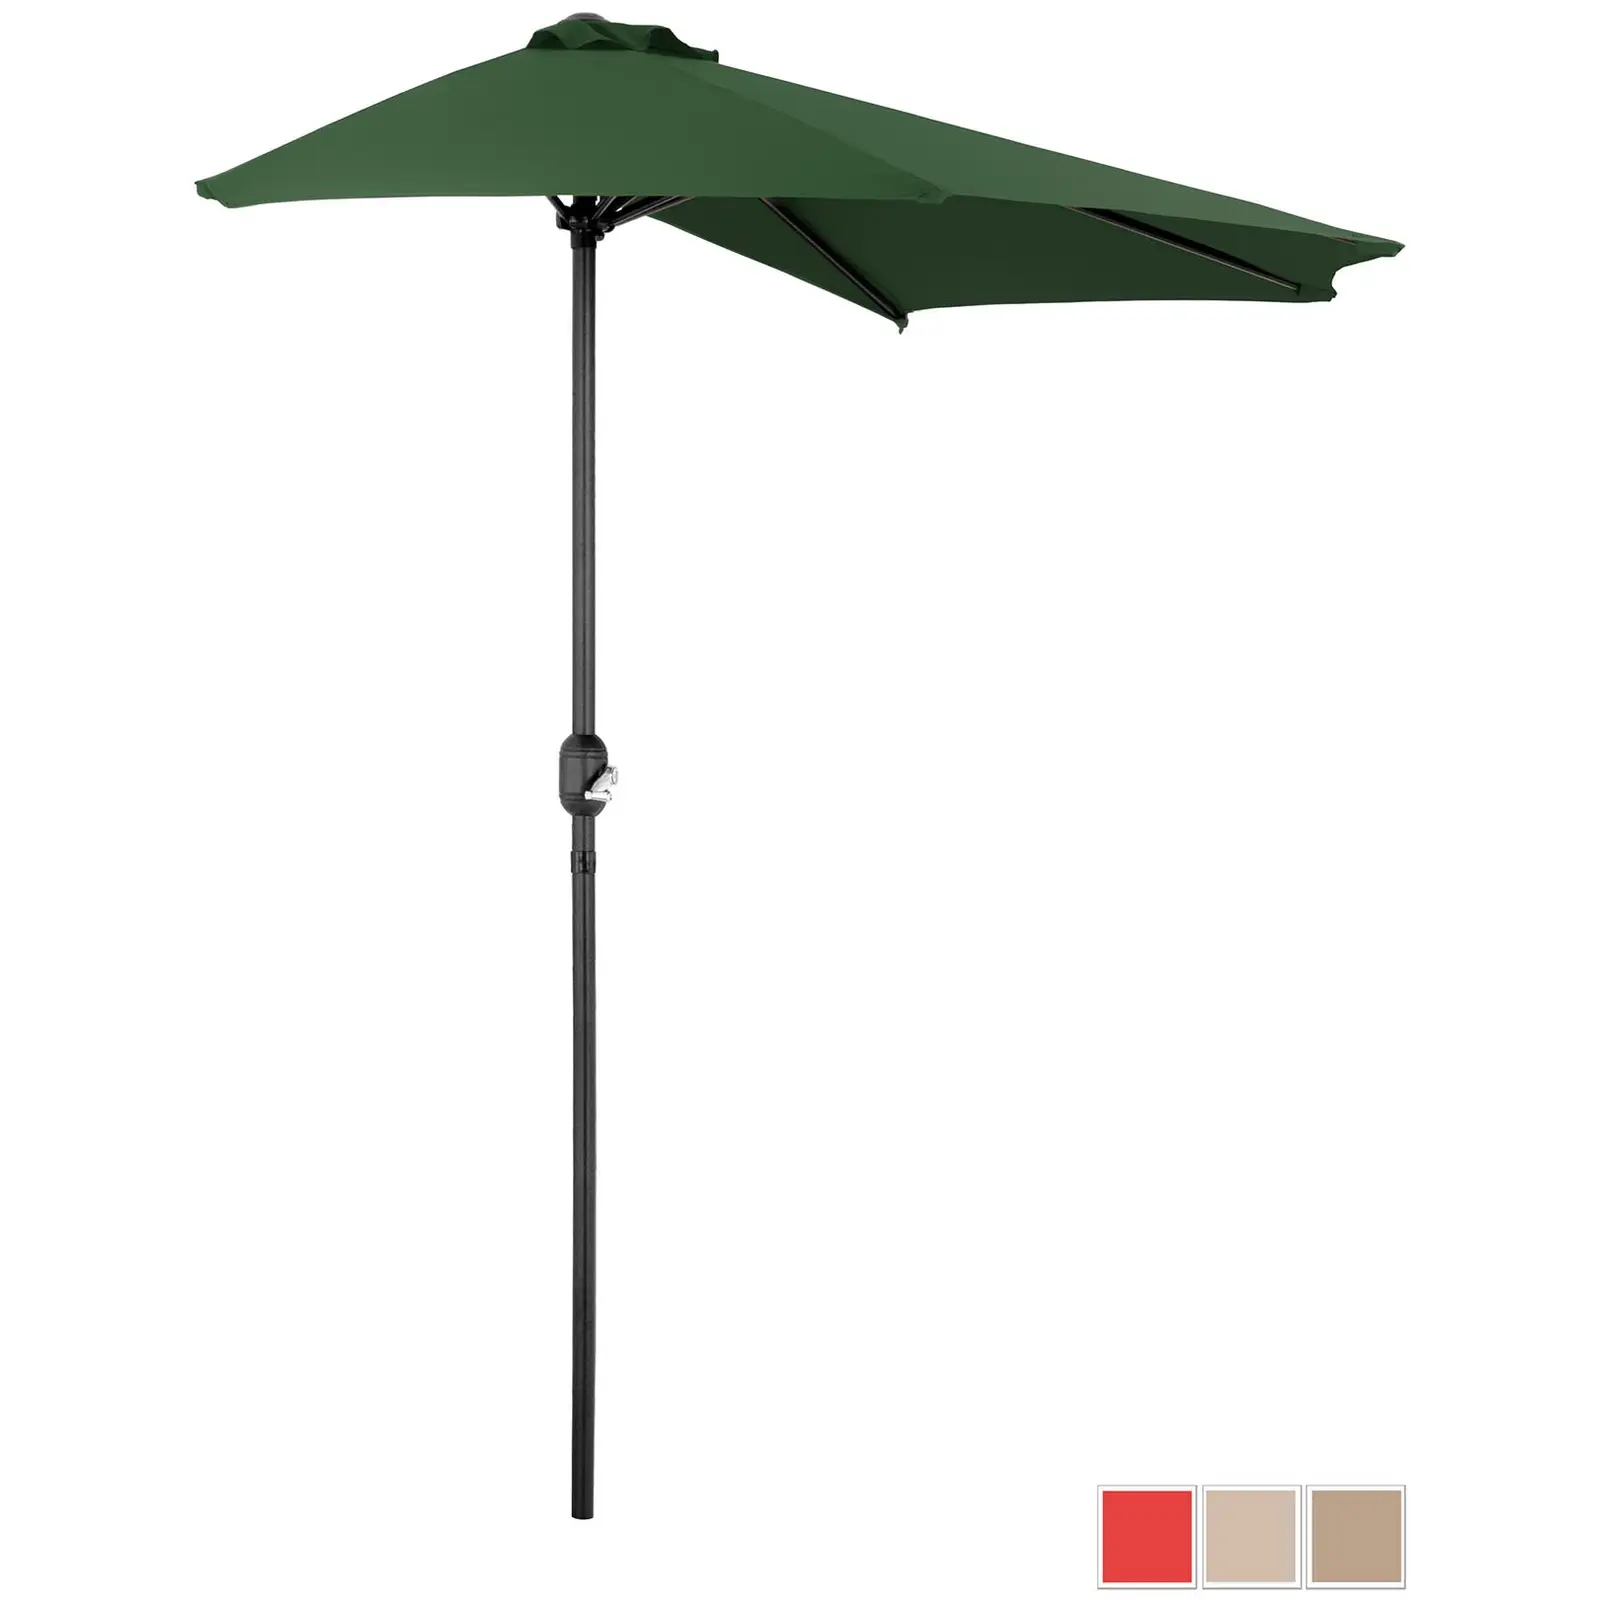 Half Umbrella - green - pentagonal - 270 x 135 cm